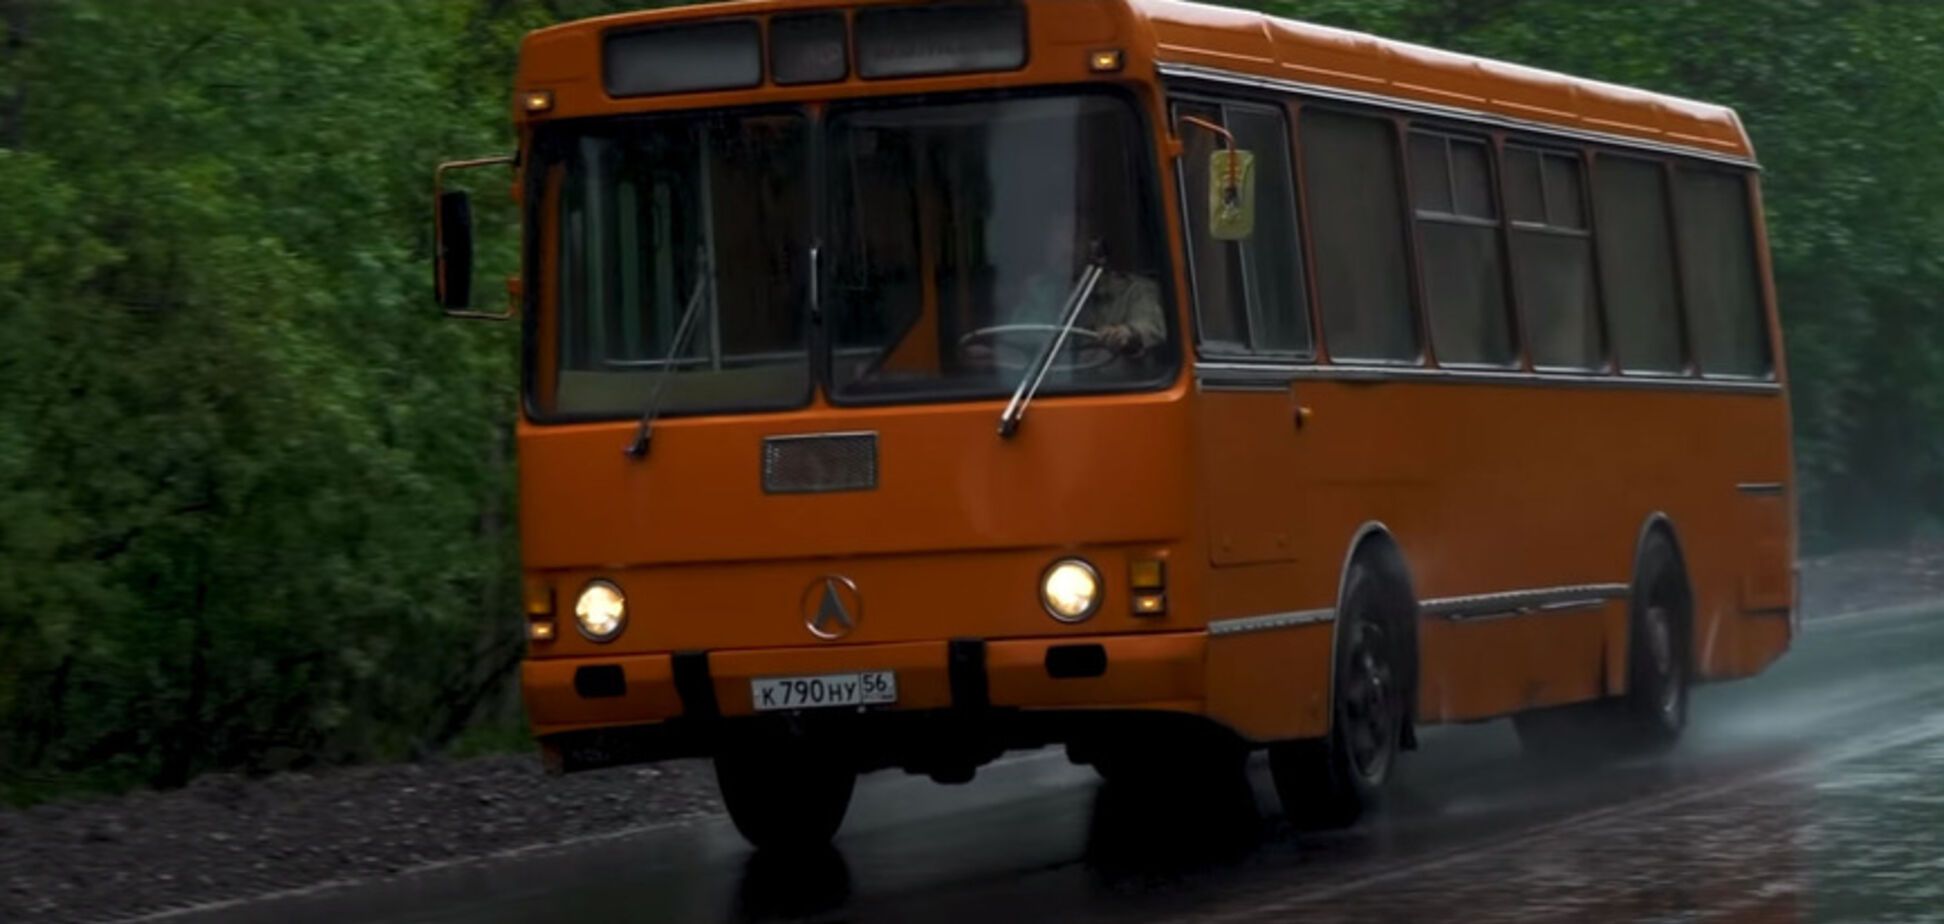 Украинский ЛАЗ-42021 был довольно редким транспортным средством